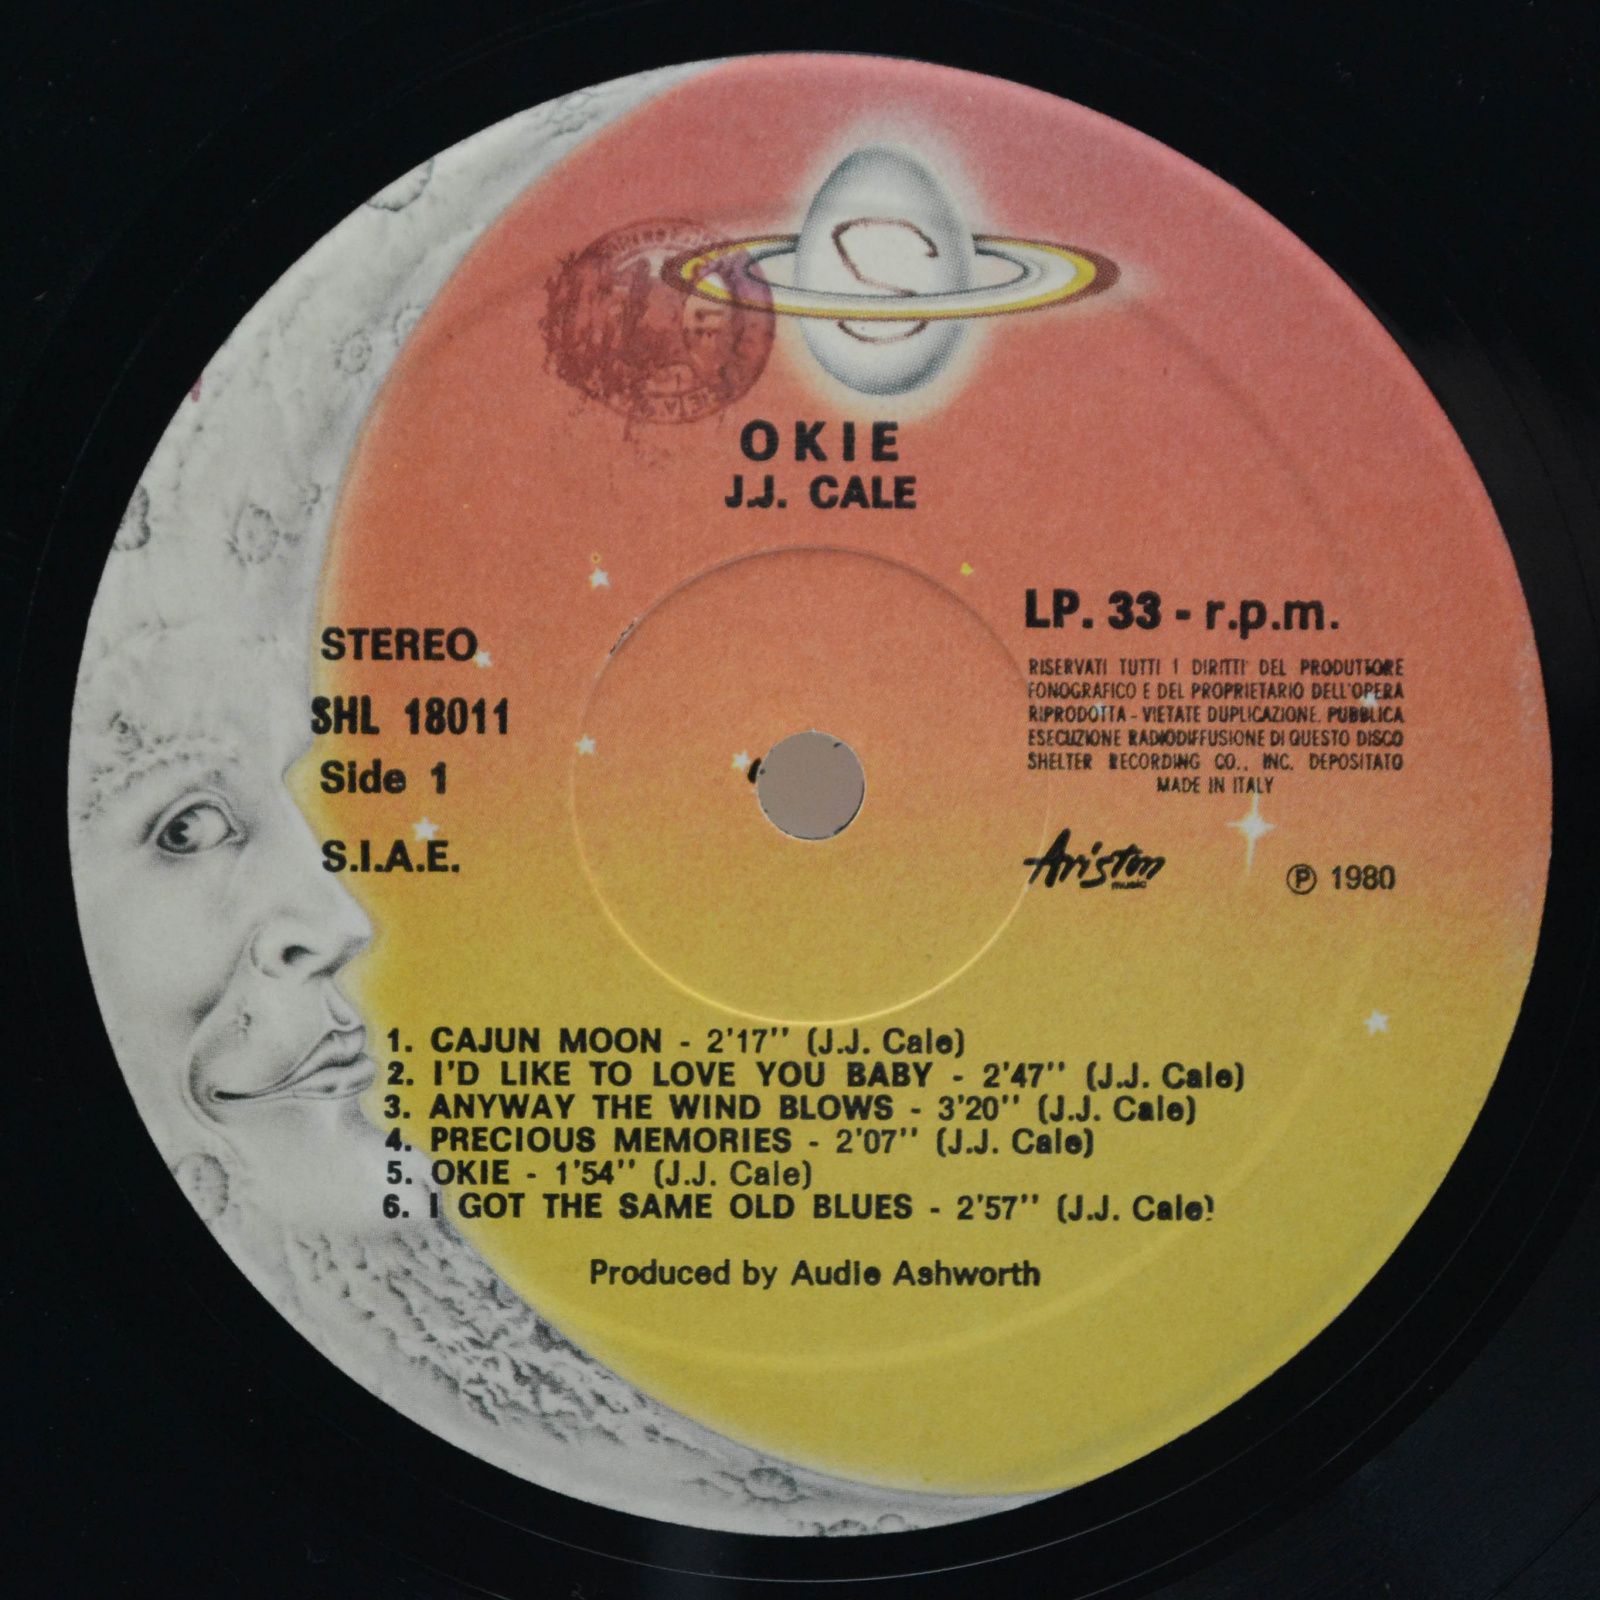 J.J. Cale — Best Of (Box-set), 1980